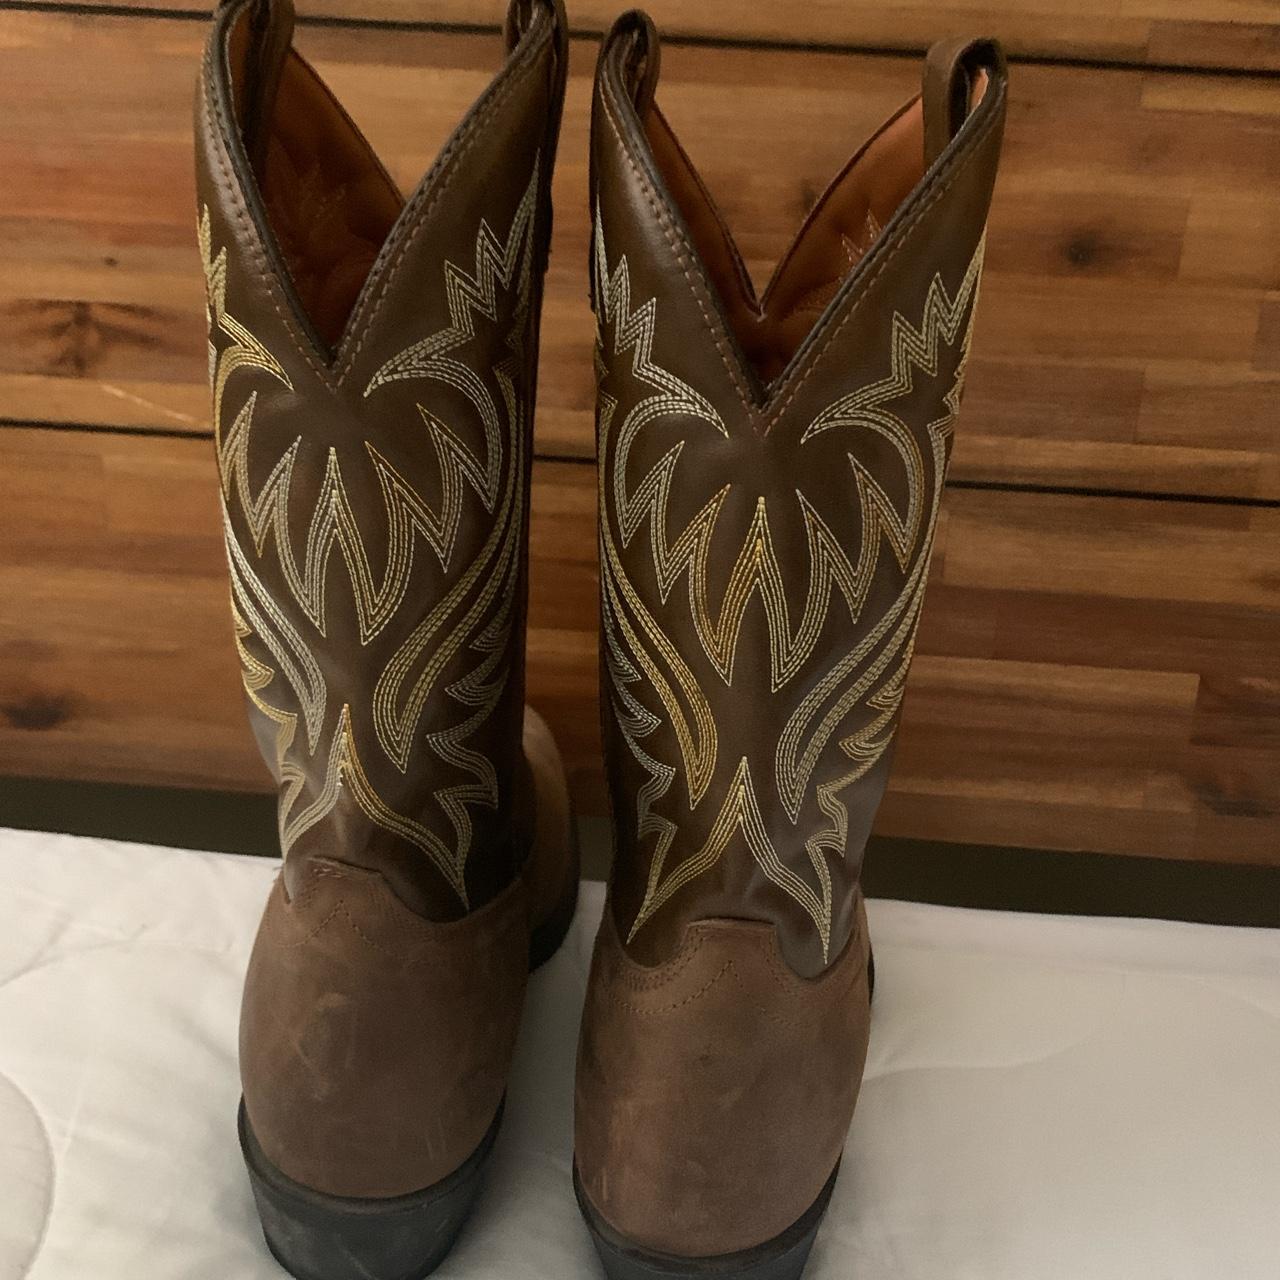 New Cowboy boots - Depop